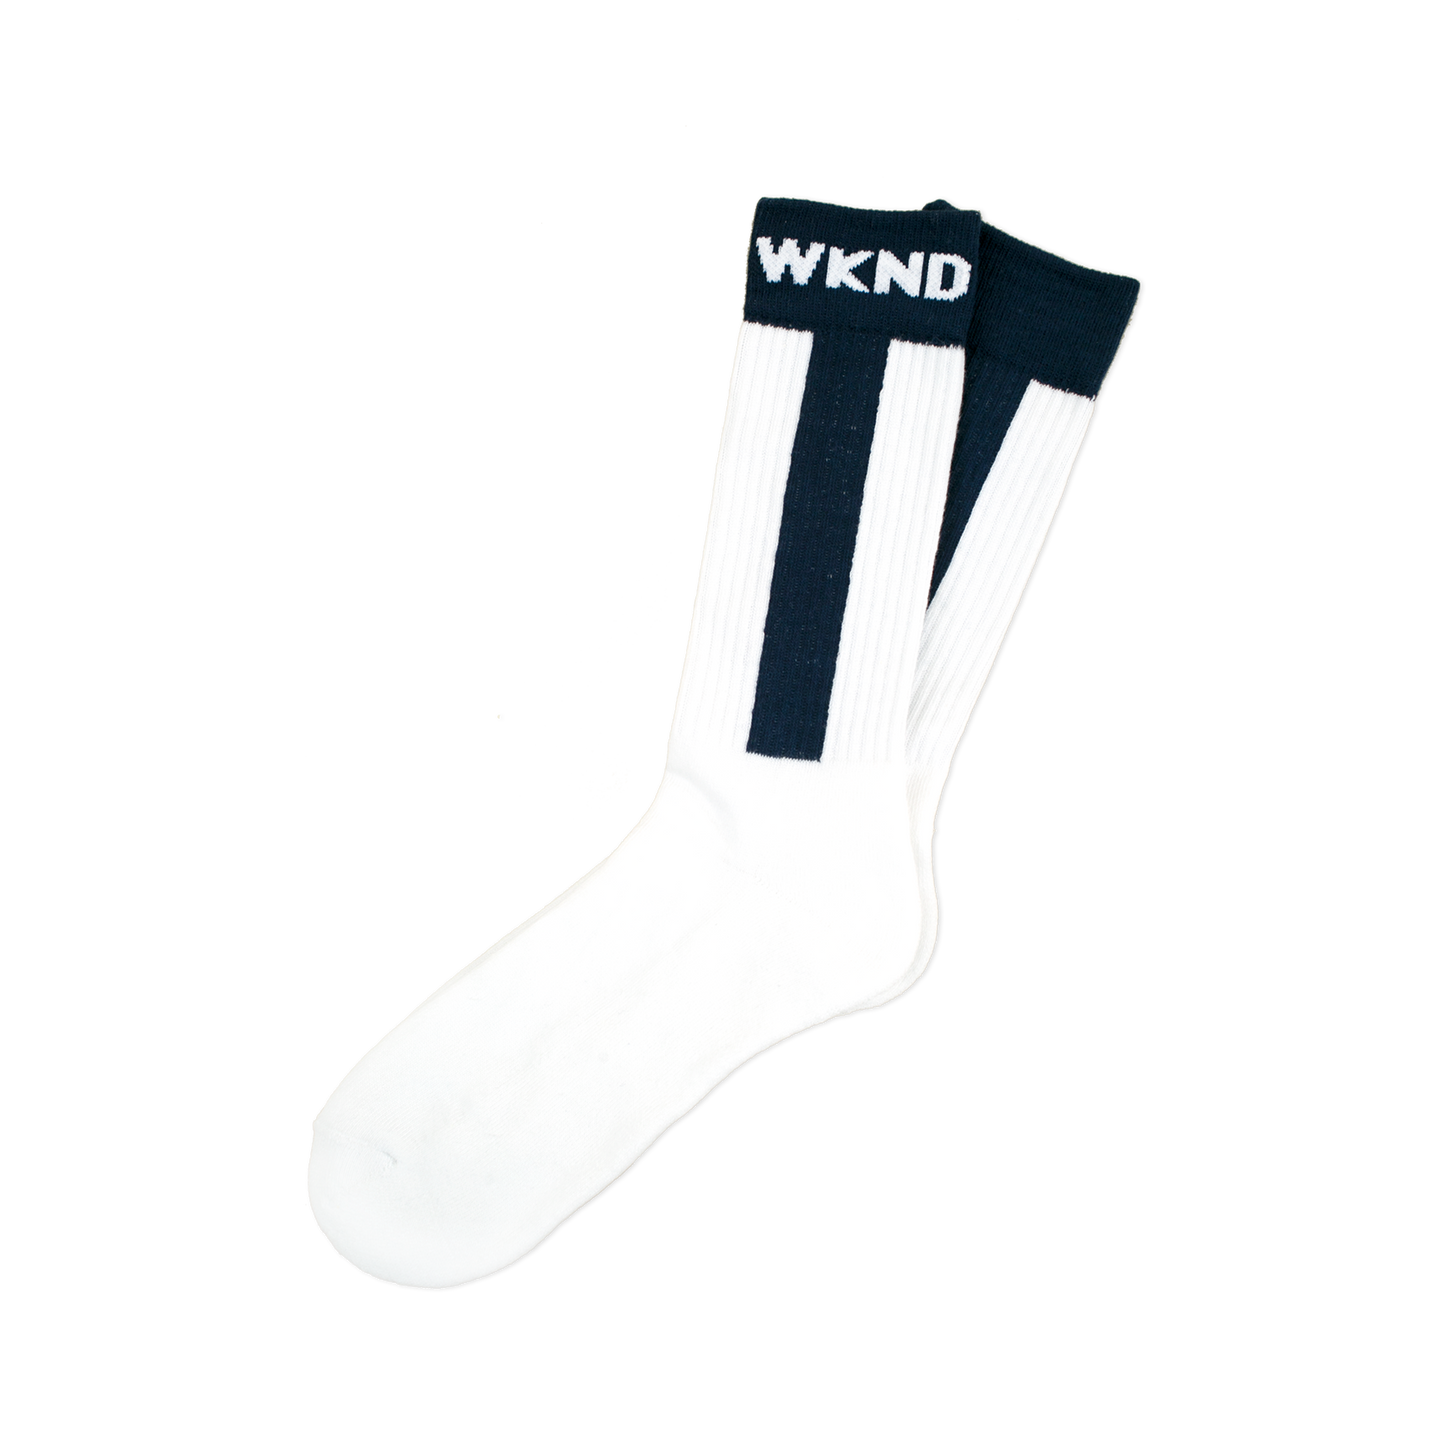 ถุงเท้าเบสบอล WKND - สีกรมท่า/ขาว